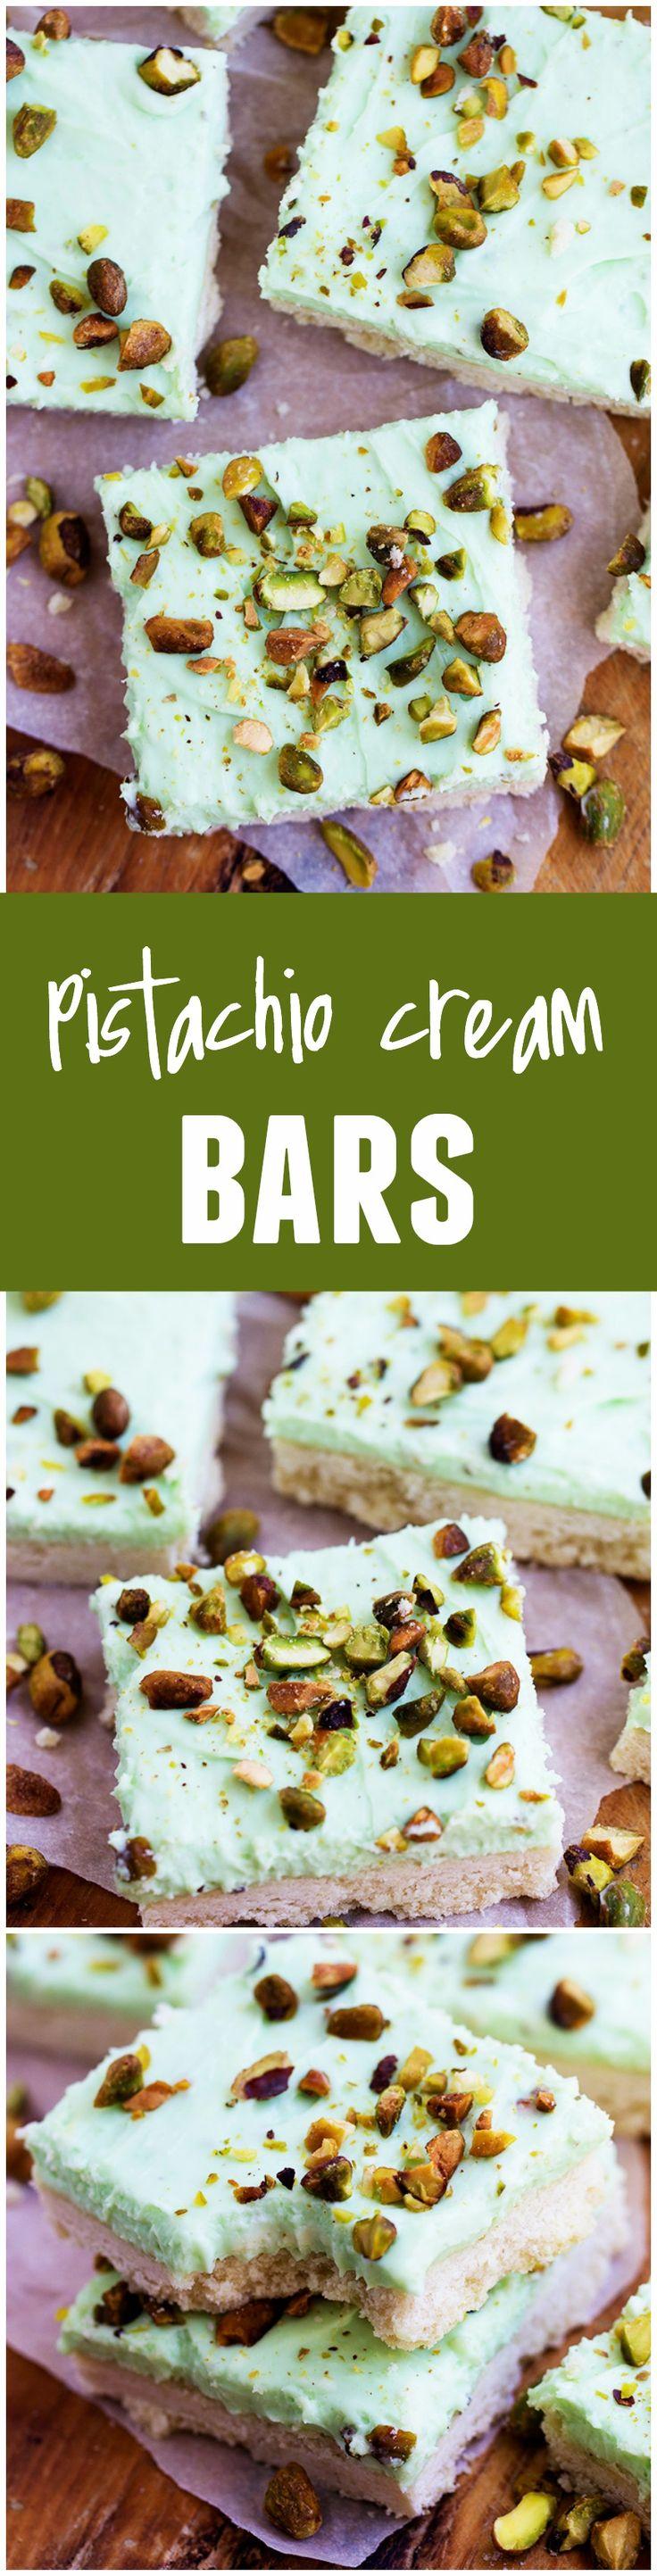 Wedding - Pistachio Cream Bars